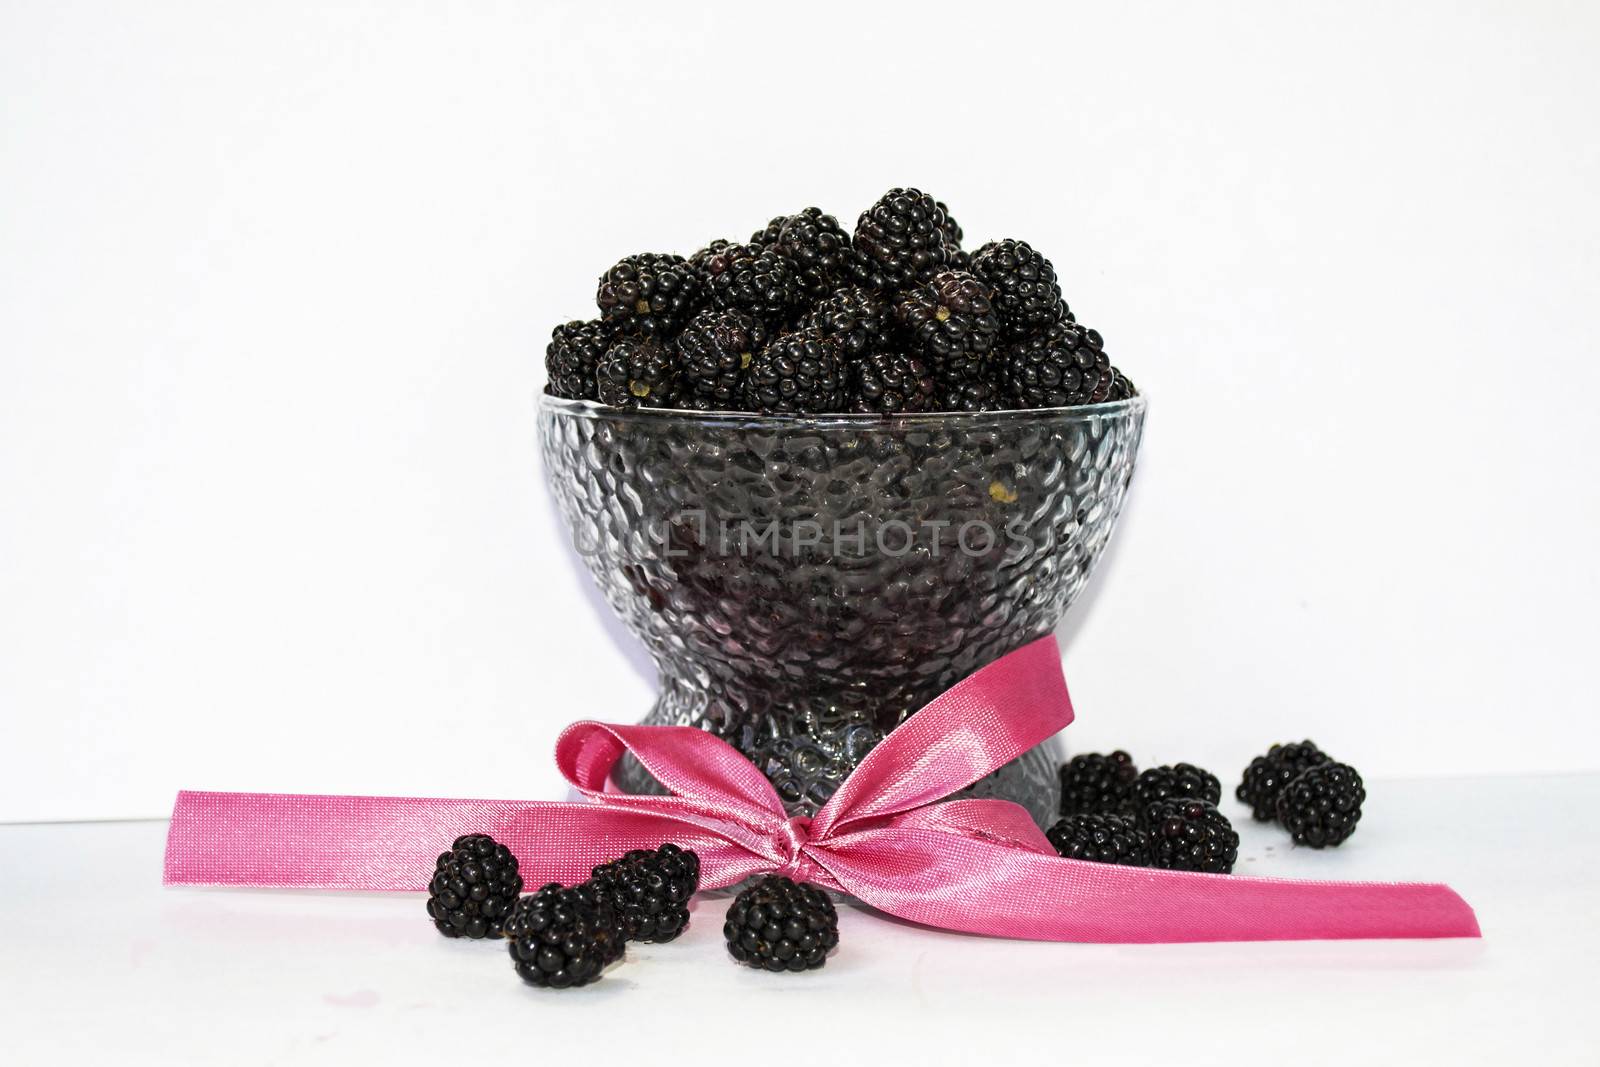 blackberry dessert in a glass by volandemorius66